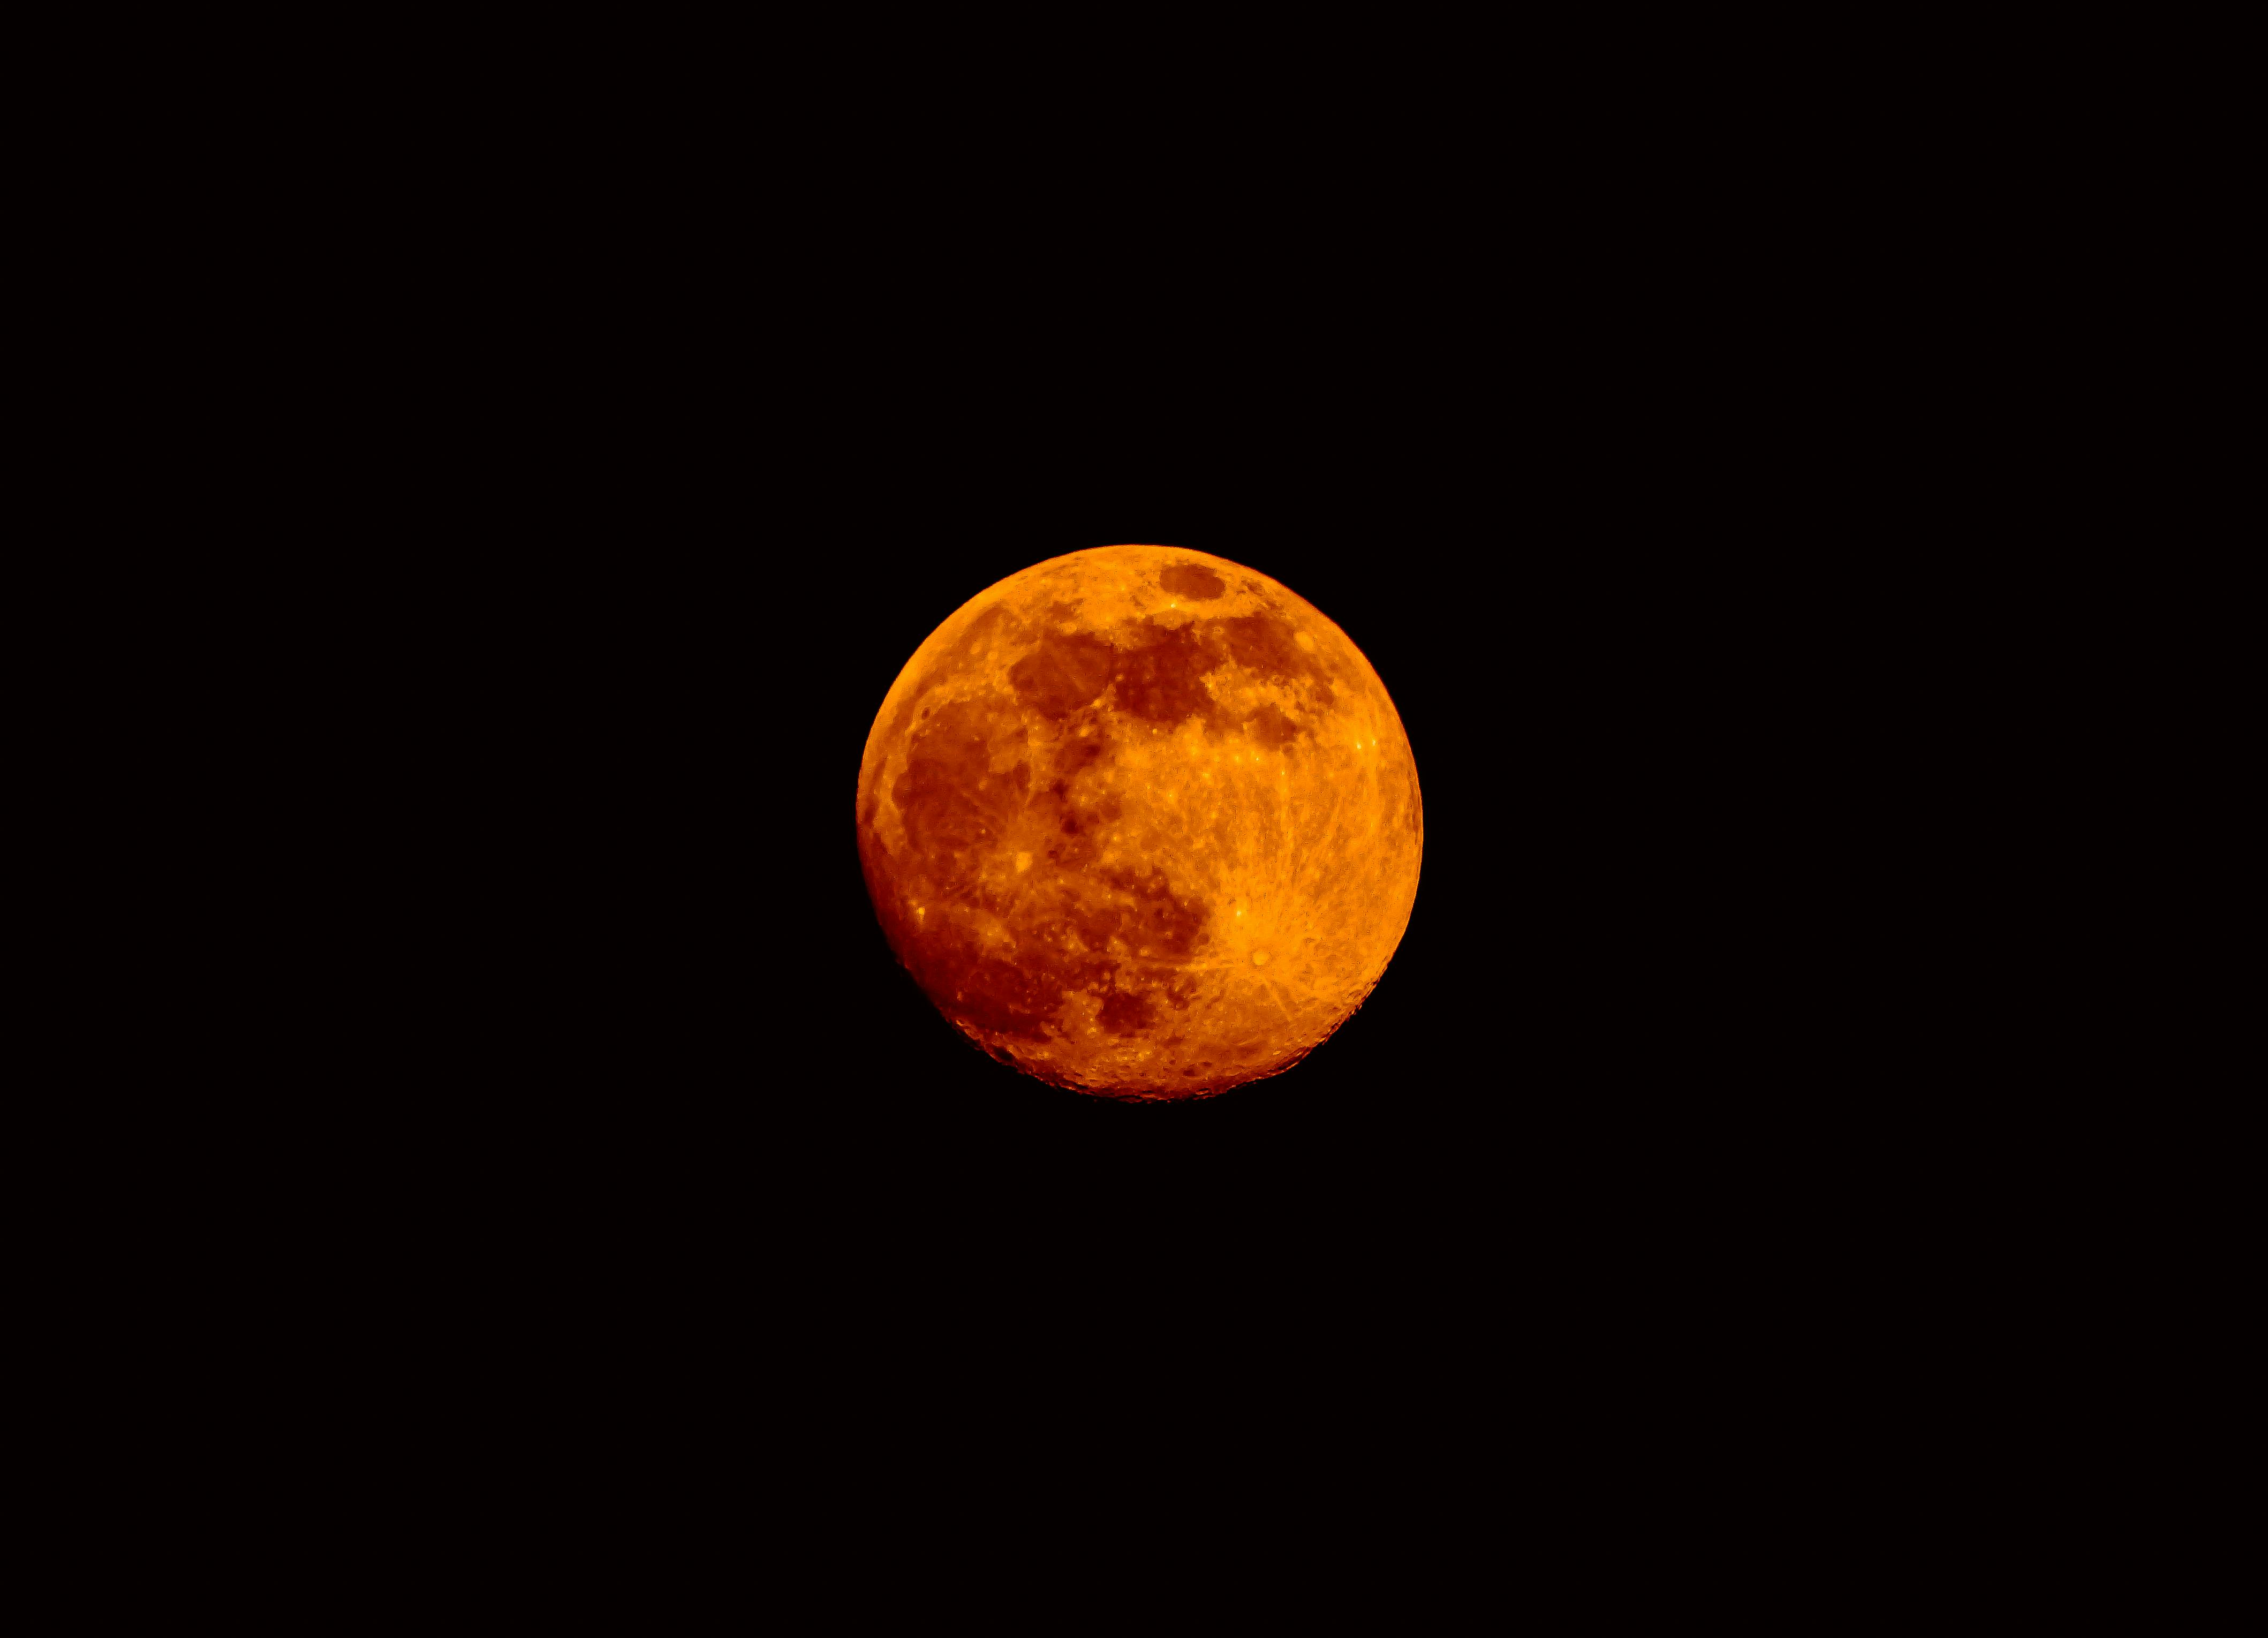 Ánh trăng xa xôi trên bầu trời đêm đang chờ đón bạn. Trong hình ảnh liên quan đến từ khóa \'Moon\', bạn sẽ được nhìn thấy vẻ đẹp và sự tình cảm không thể nào phản bội của ánh trăng.